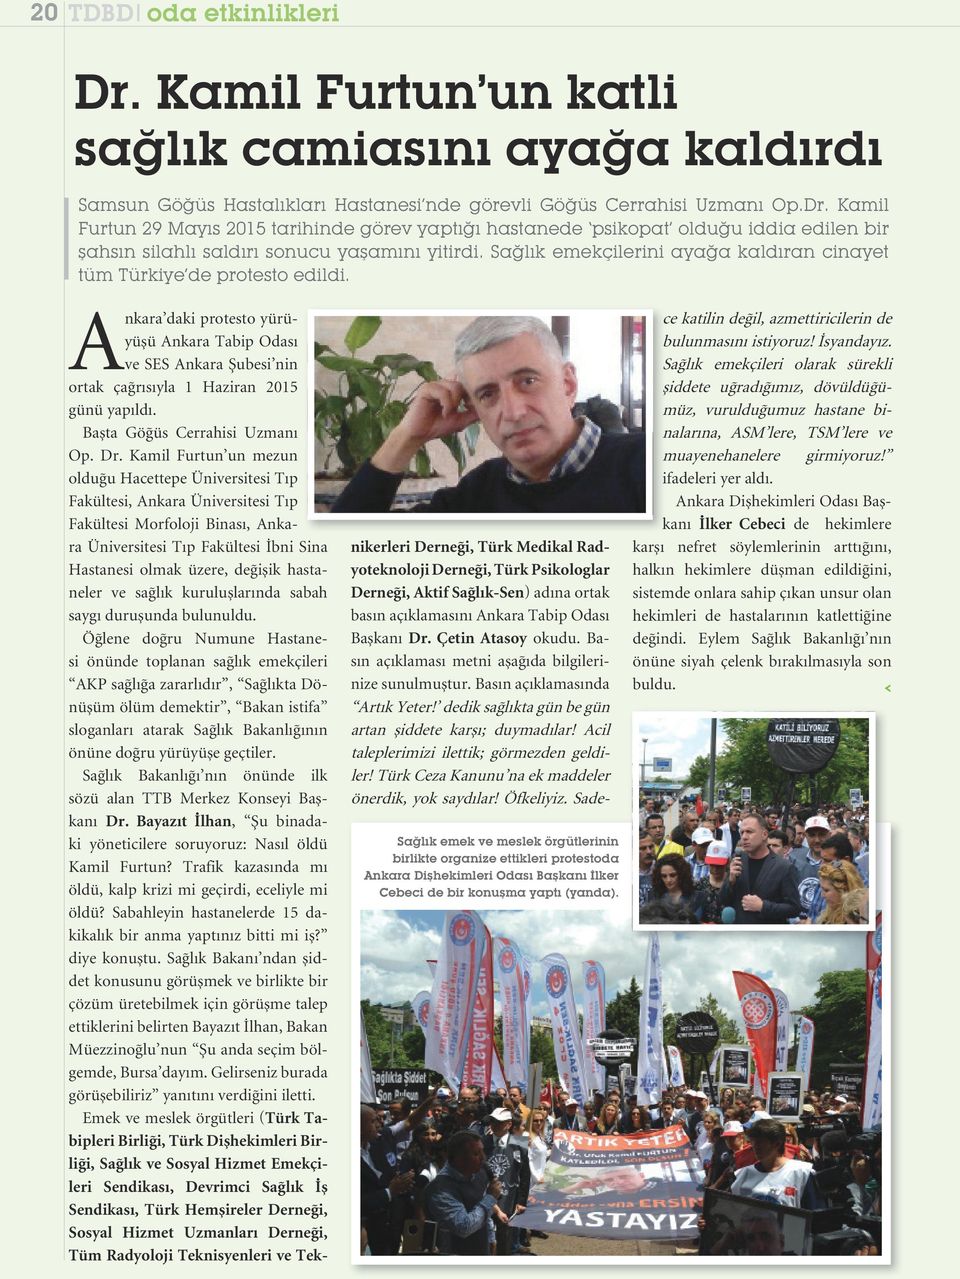 Sağlık emek ve meslek örgütlerinin birlikte organize ettikleri protestoda Ankara Dişhekimleri Odası Başkanı İlker Cebeci de bir konuşma yaptı (yanda).